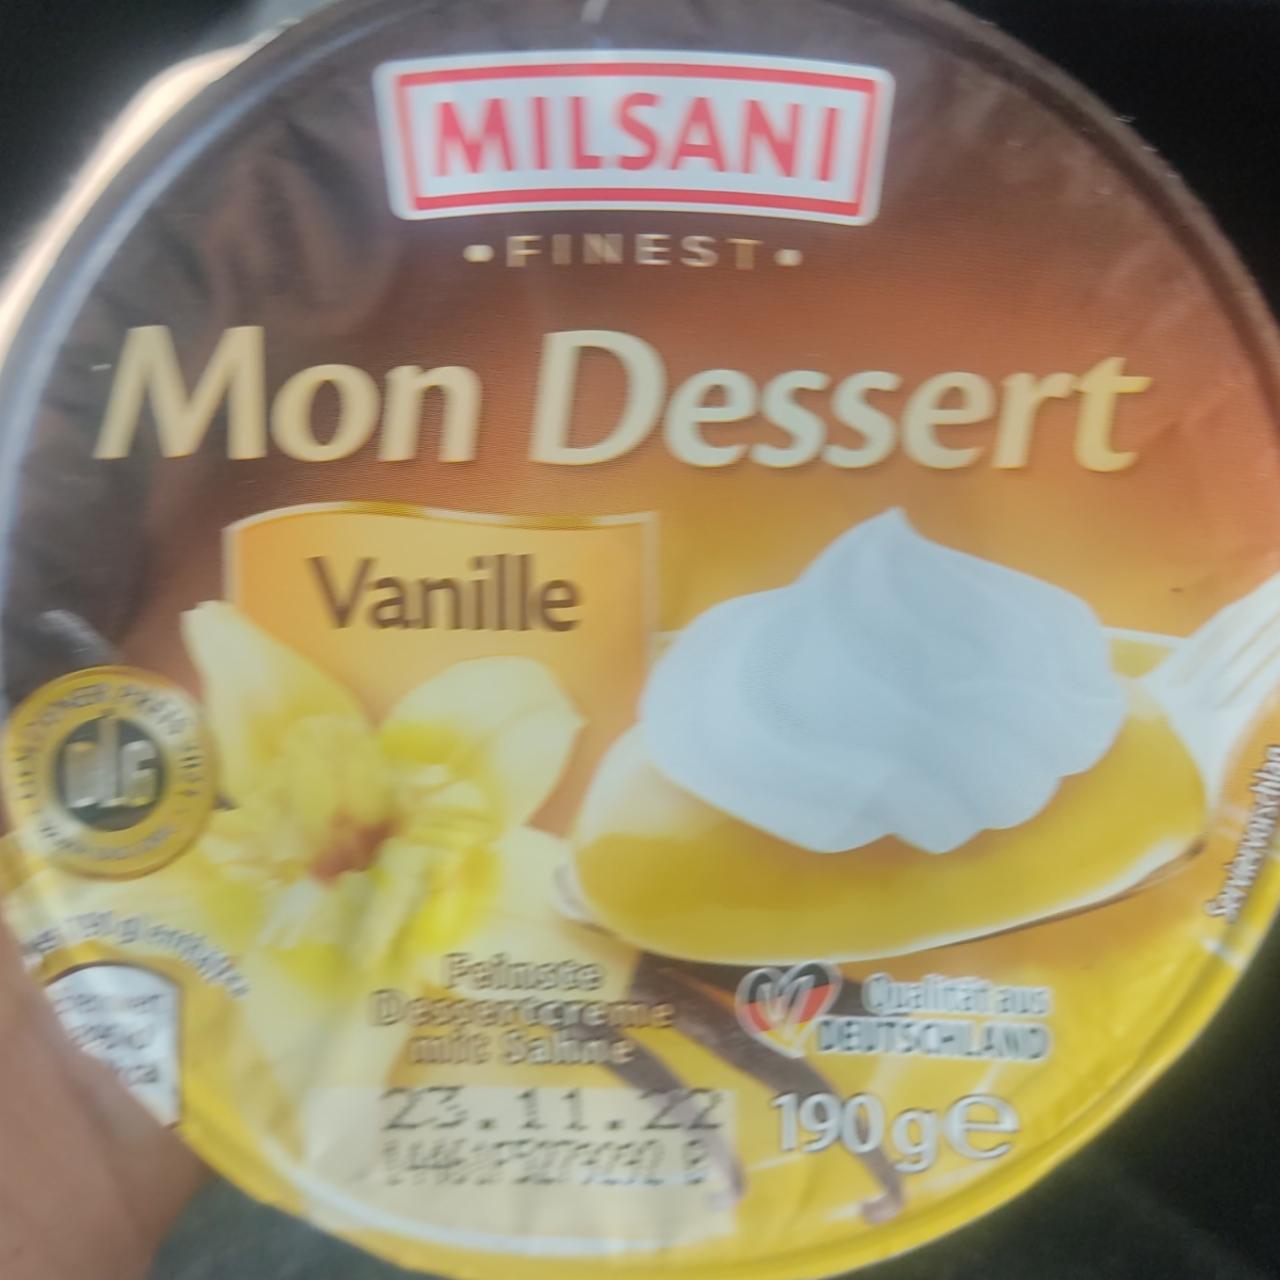 Фото - ванильный дессерт mon dessert Milsani